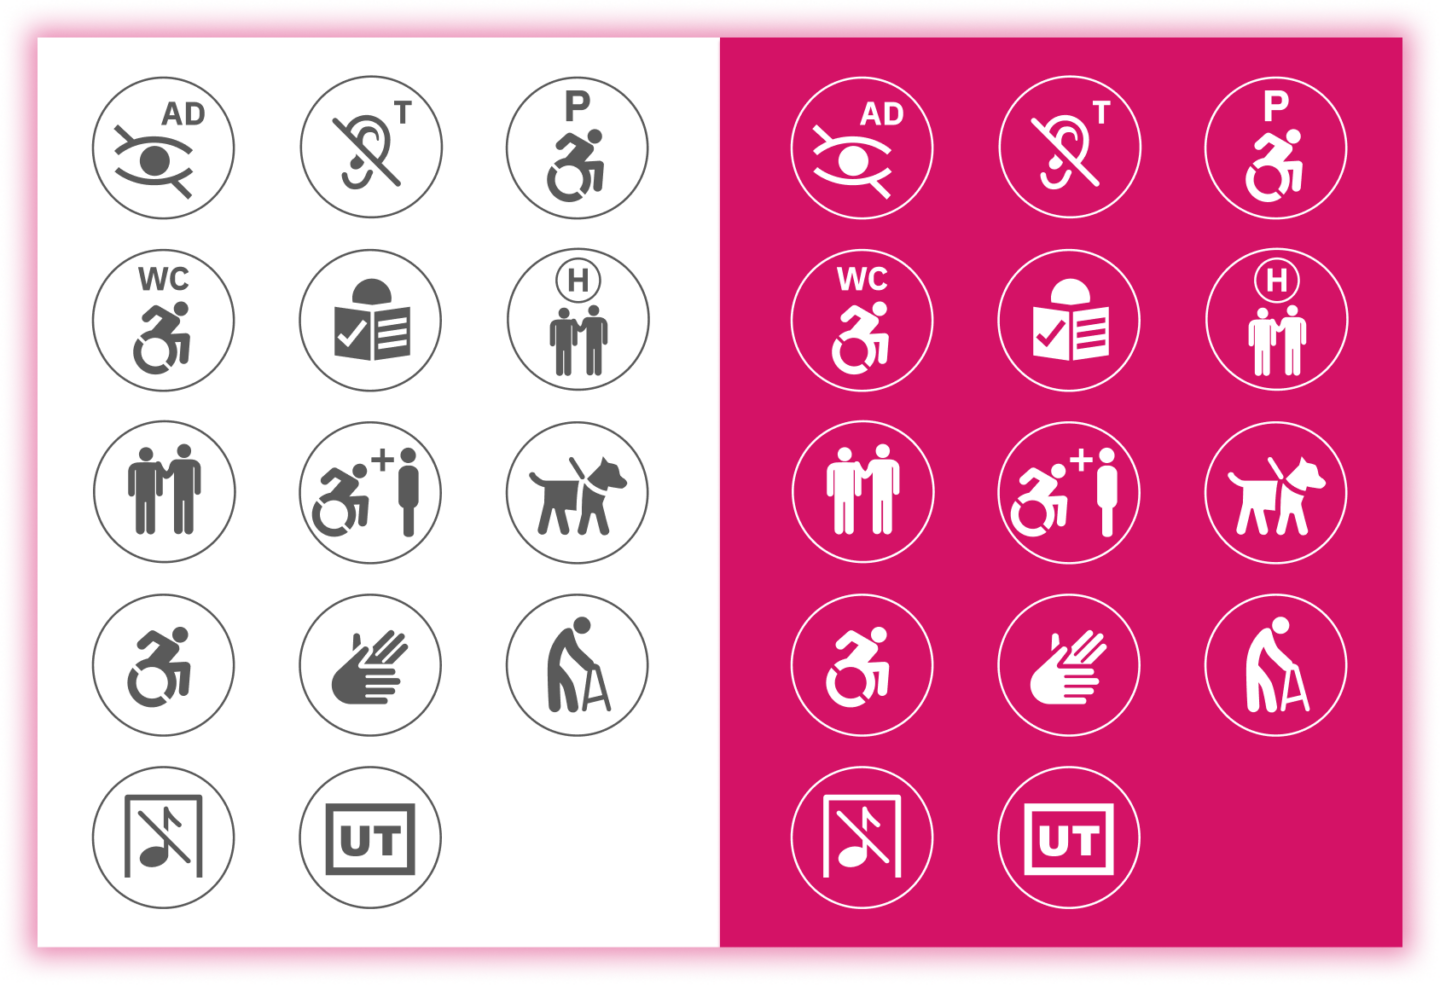 Kubia Website Redesign durch Büro Gestalten – Icons zur Erklärung der Barrierefreiheit